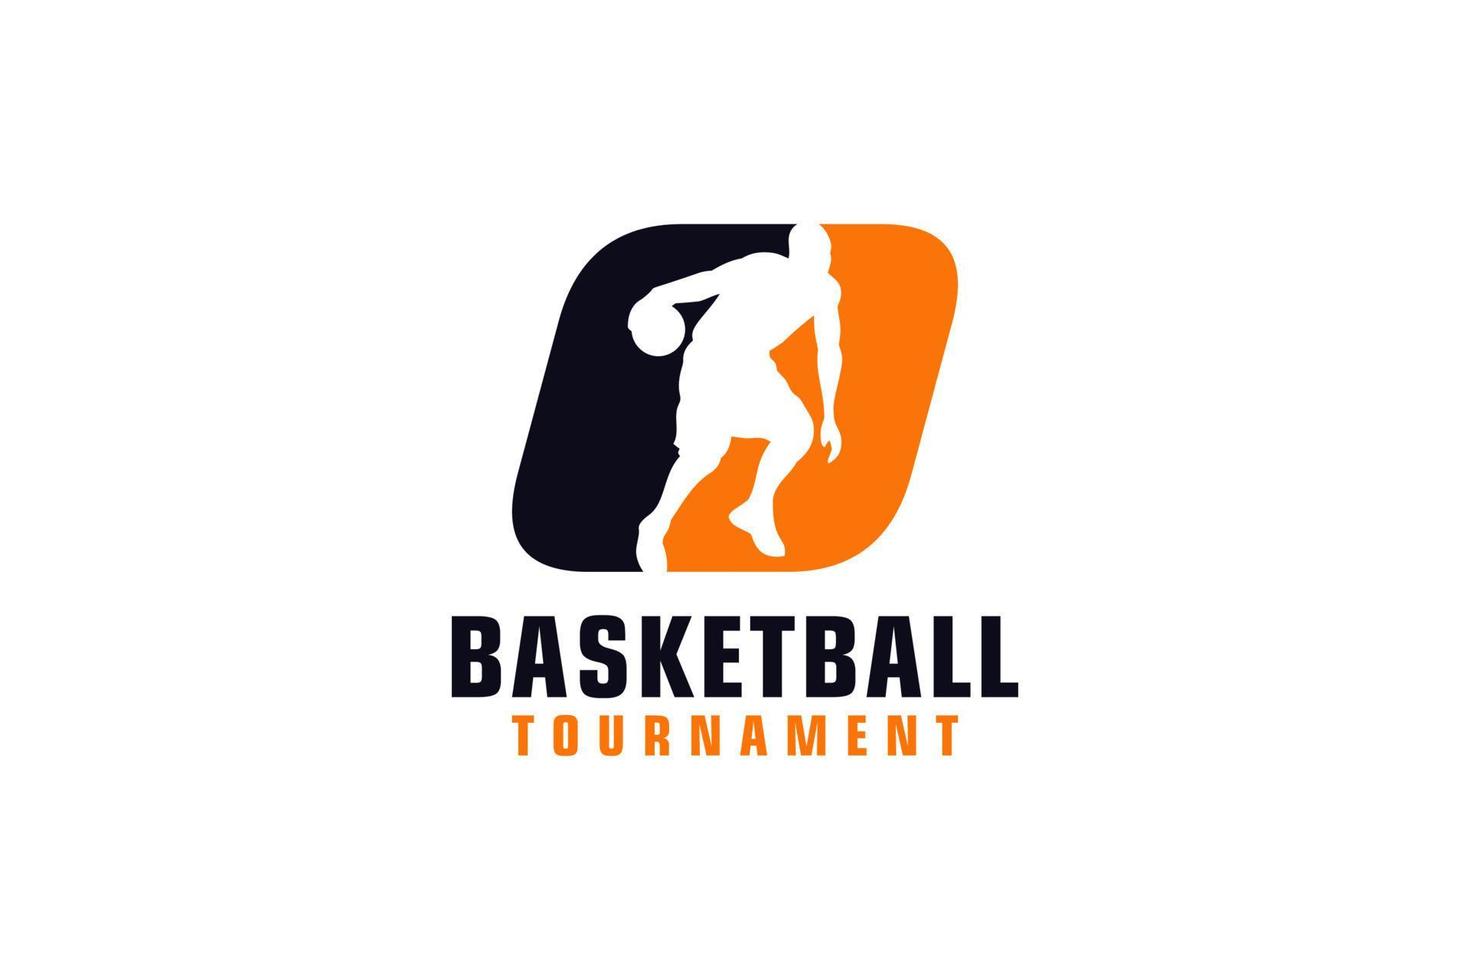 Buchstabe o mit Basketball-Logo-Design. Vektordesign-Vorlagenelemente für Sportteams oder Corporate Identity. vektor